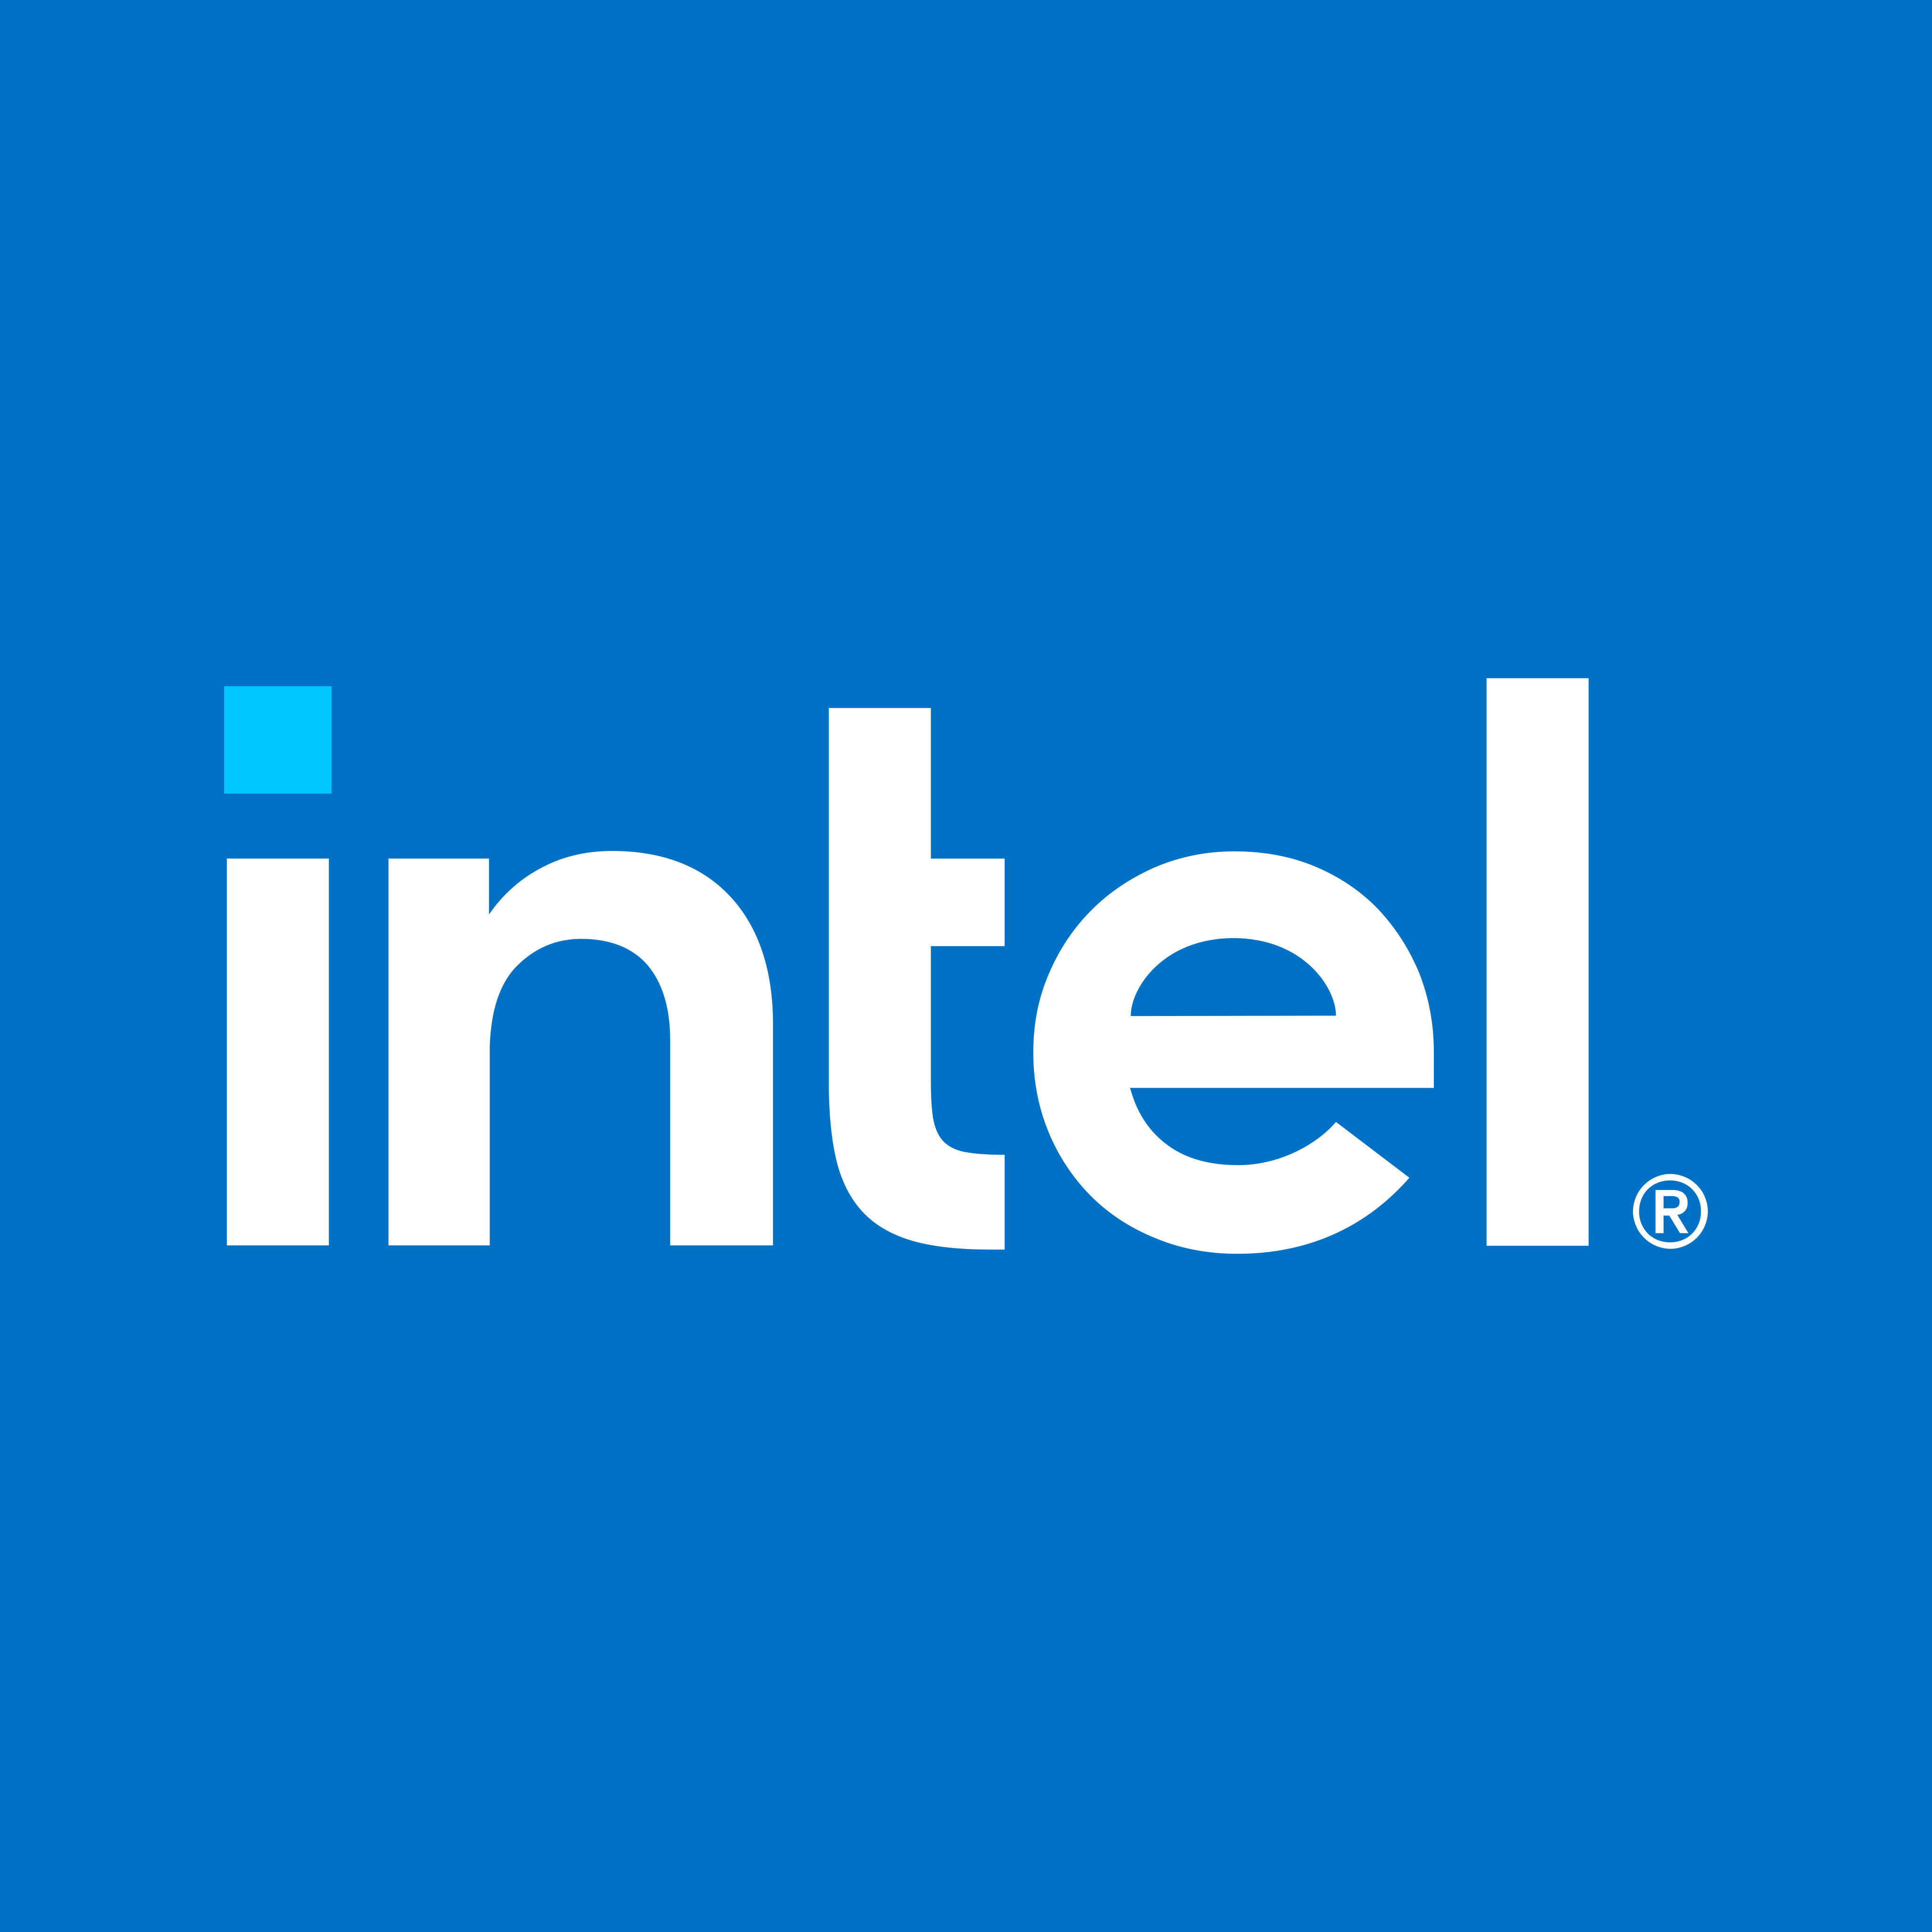 Λογότυπο Intel - PNG και Vector - Λήψη λογότυπου